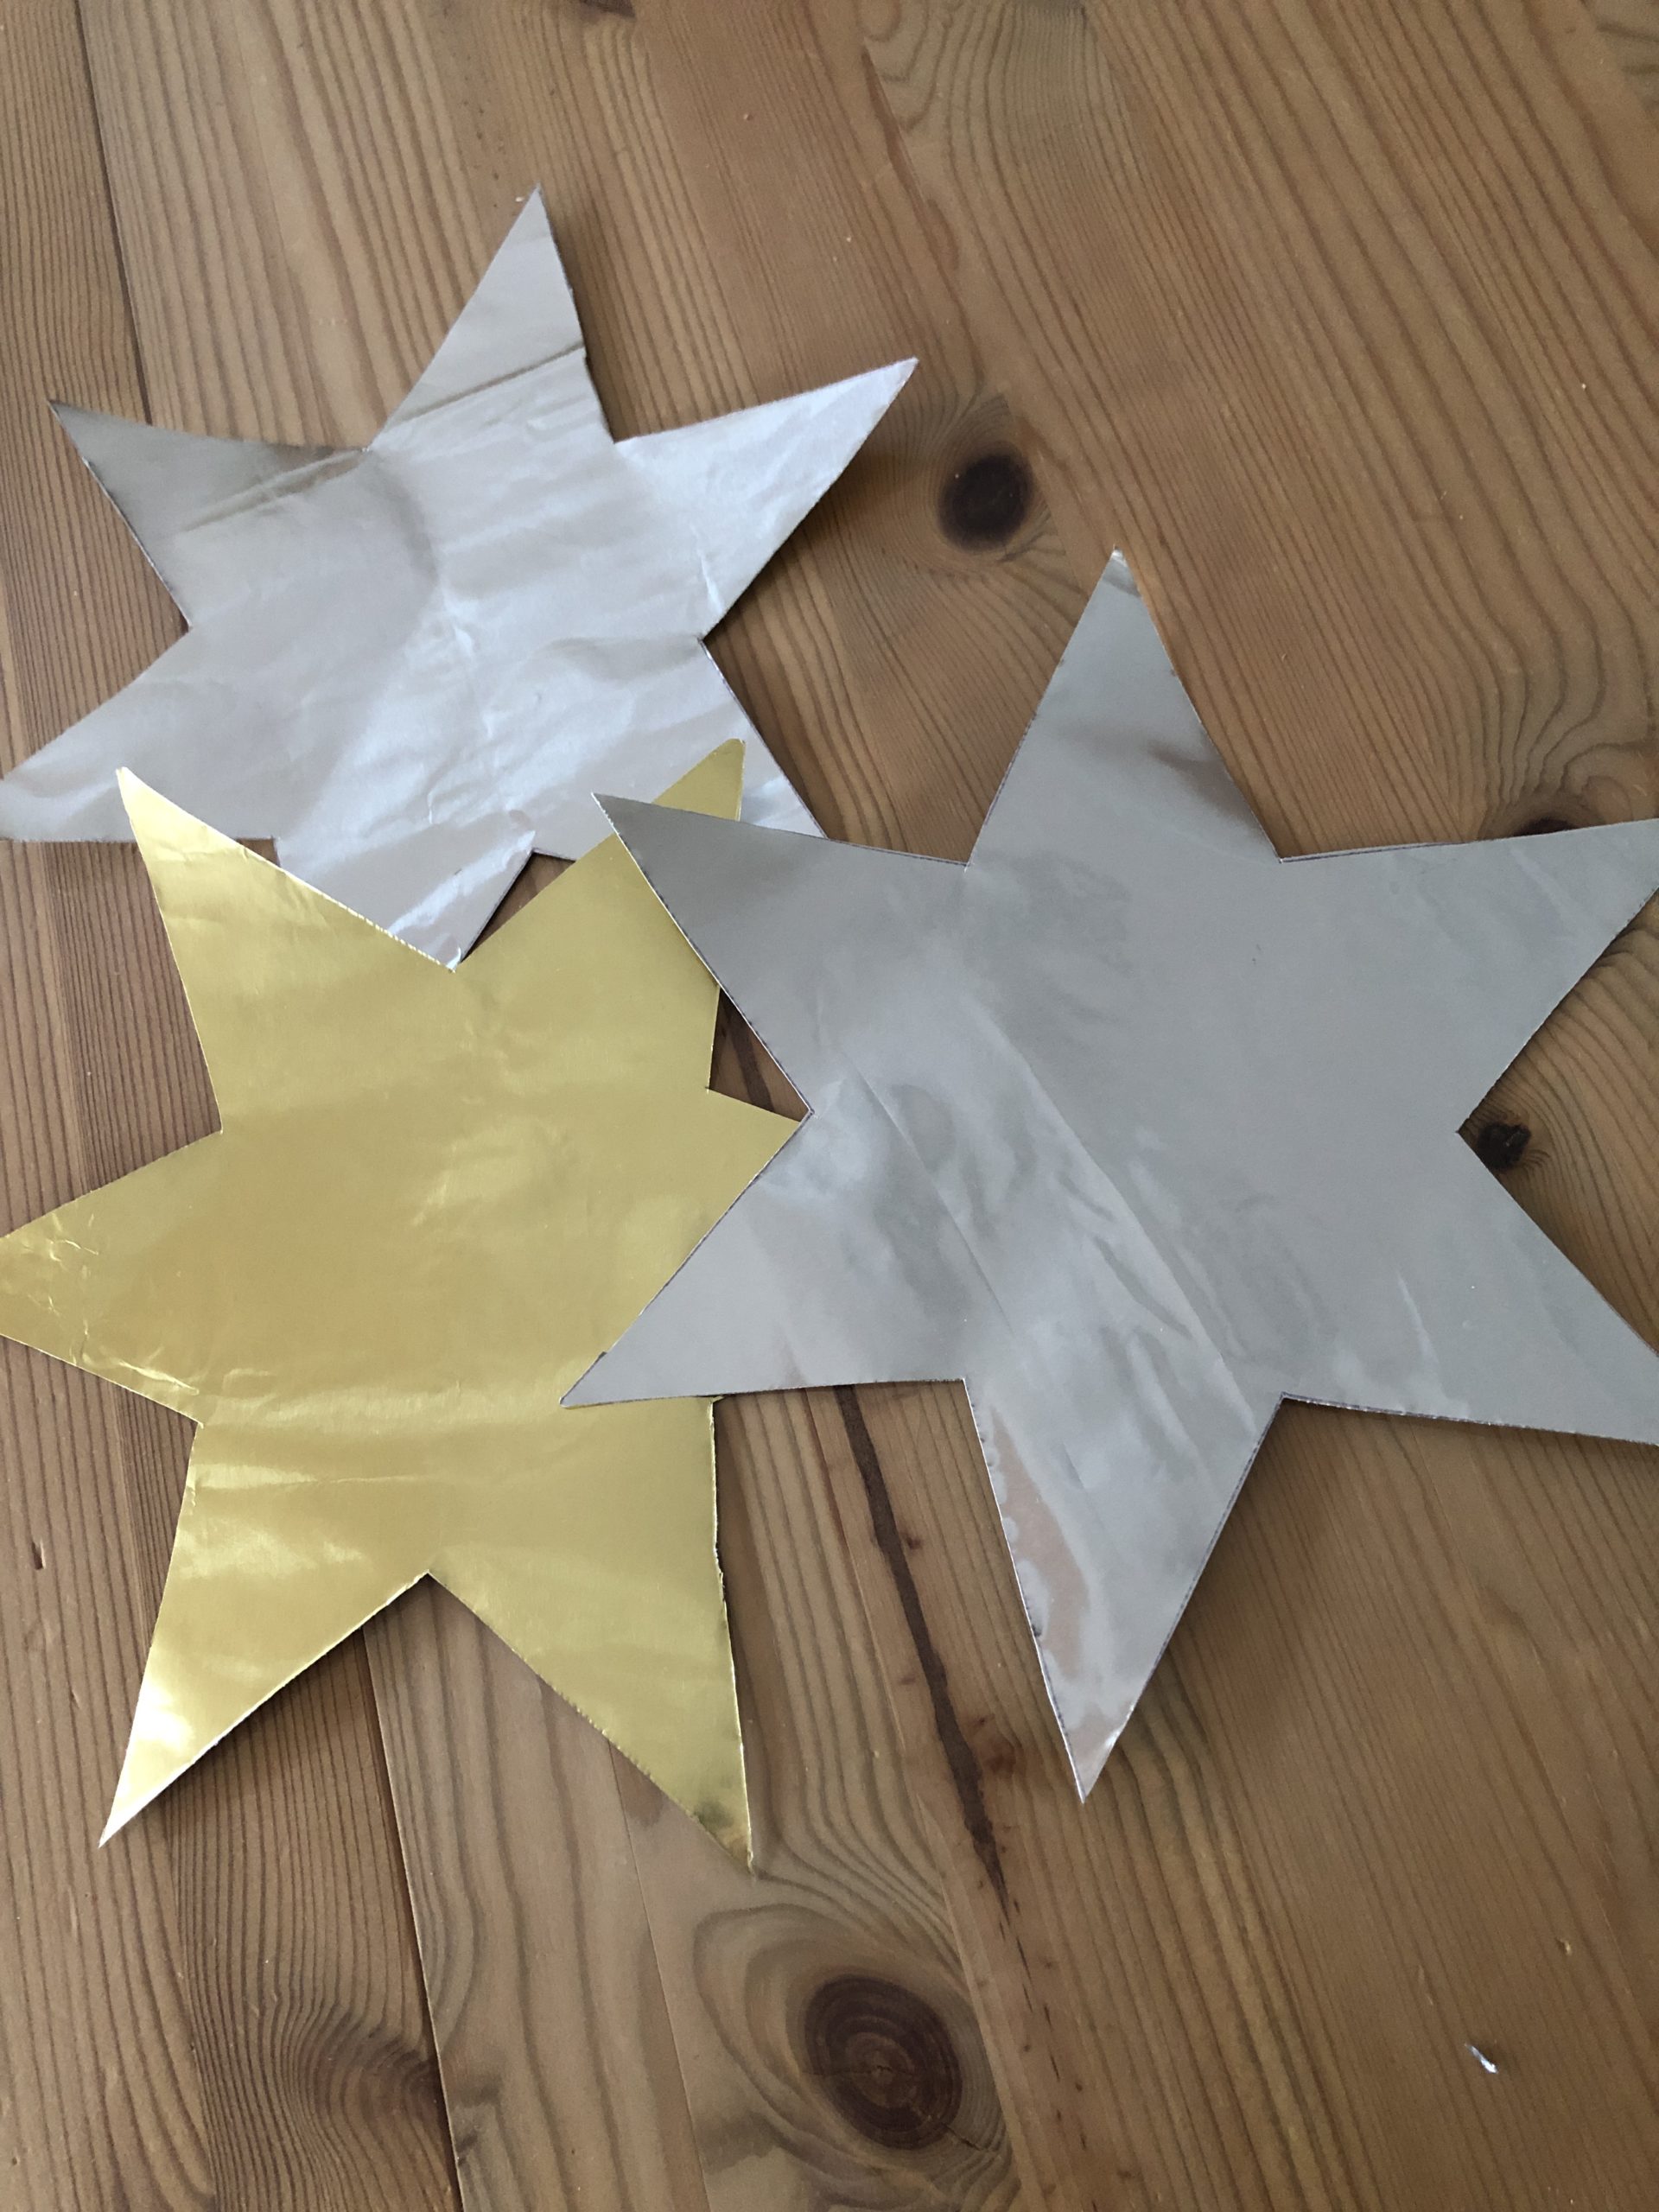 2. Bild zum Schritt 4 für die Kinder-Beschäftigung: 'Für jeden fertigen Klapperstern braucht ihr zwei Sterne aus Goldpapier.'